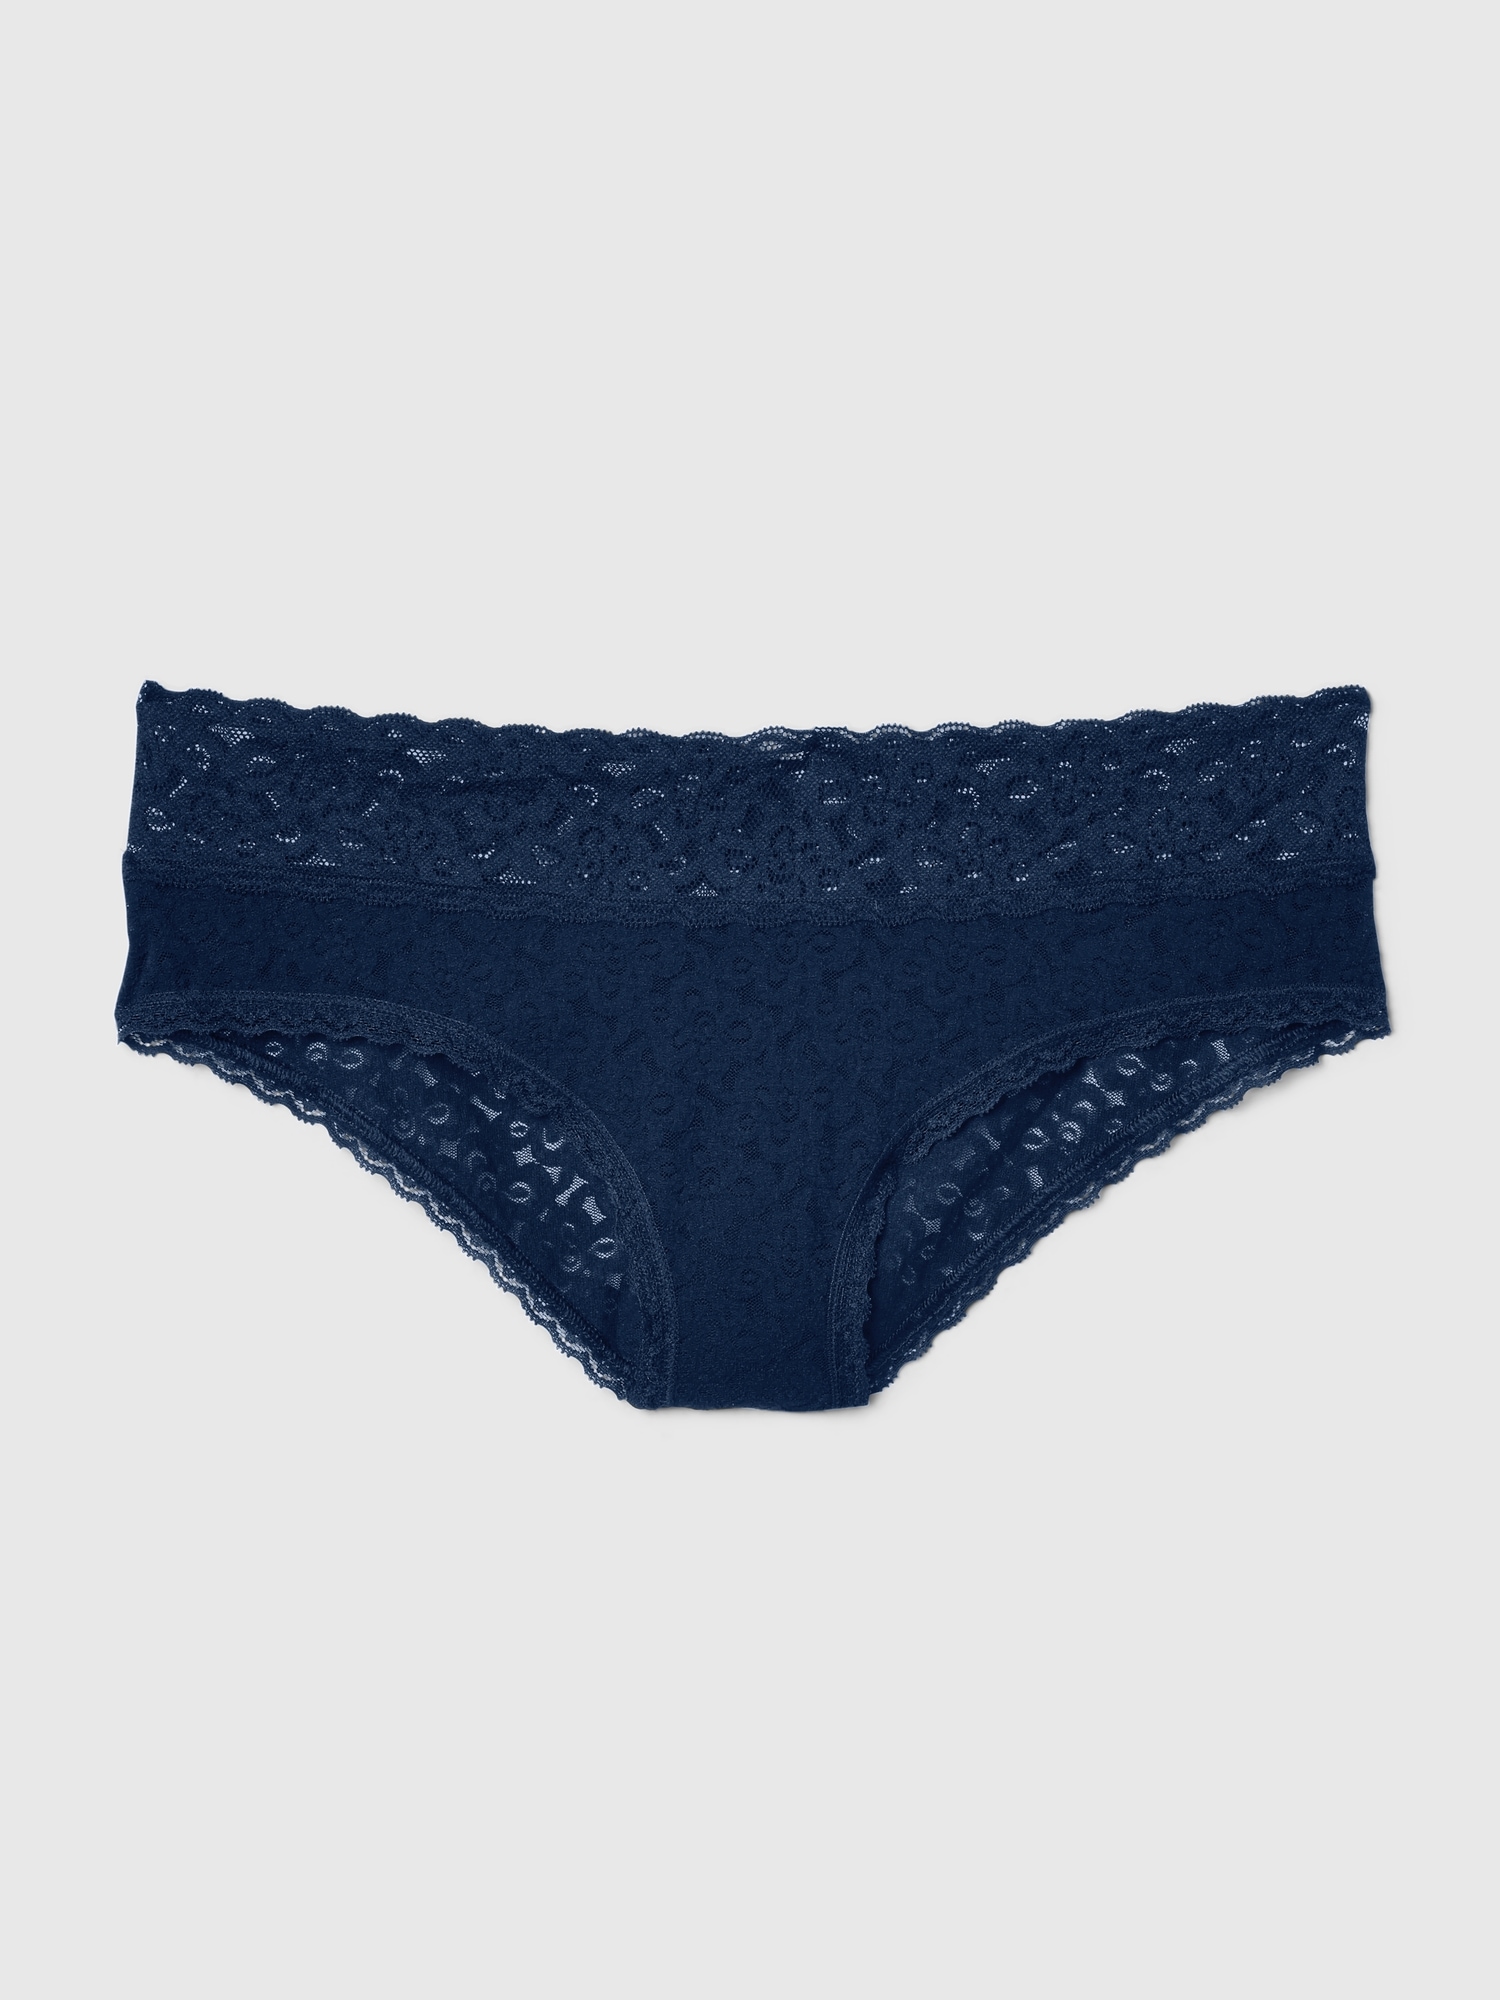 GAP Women's 3-Pack Lace Cheeky Underpants Underwear